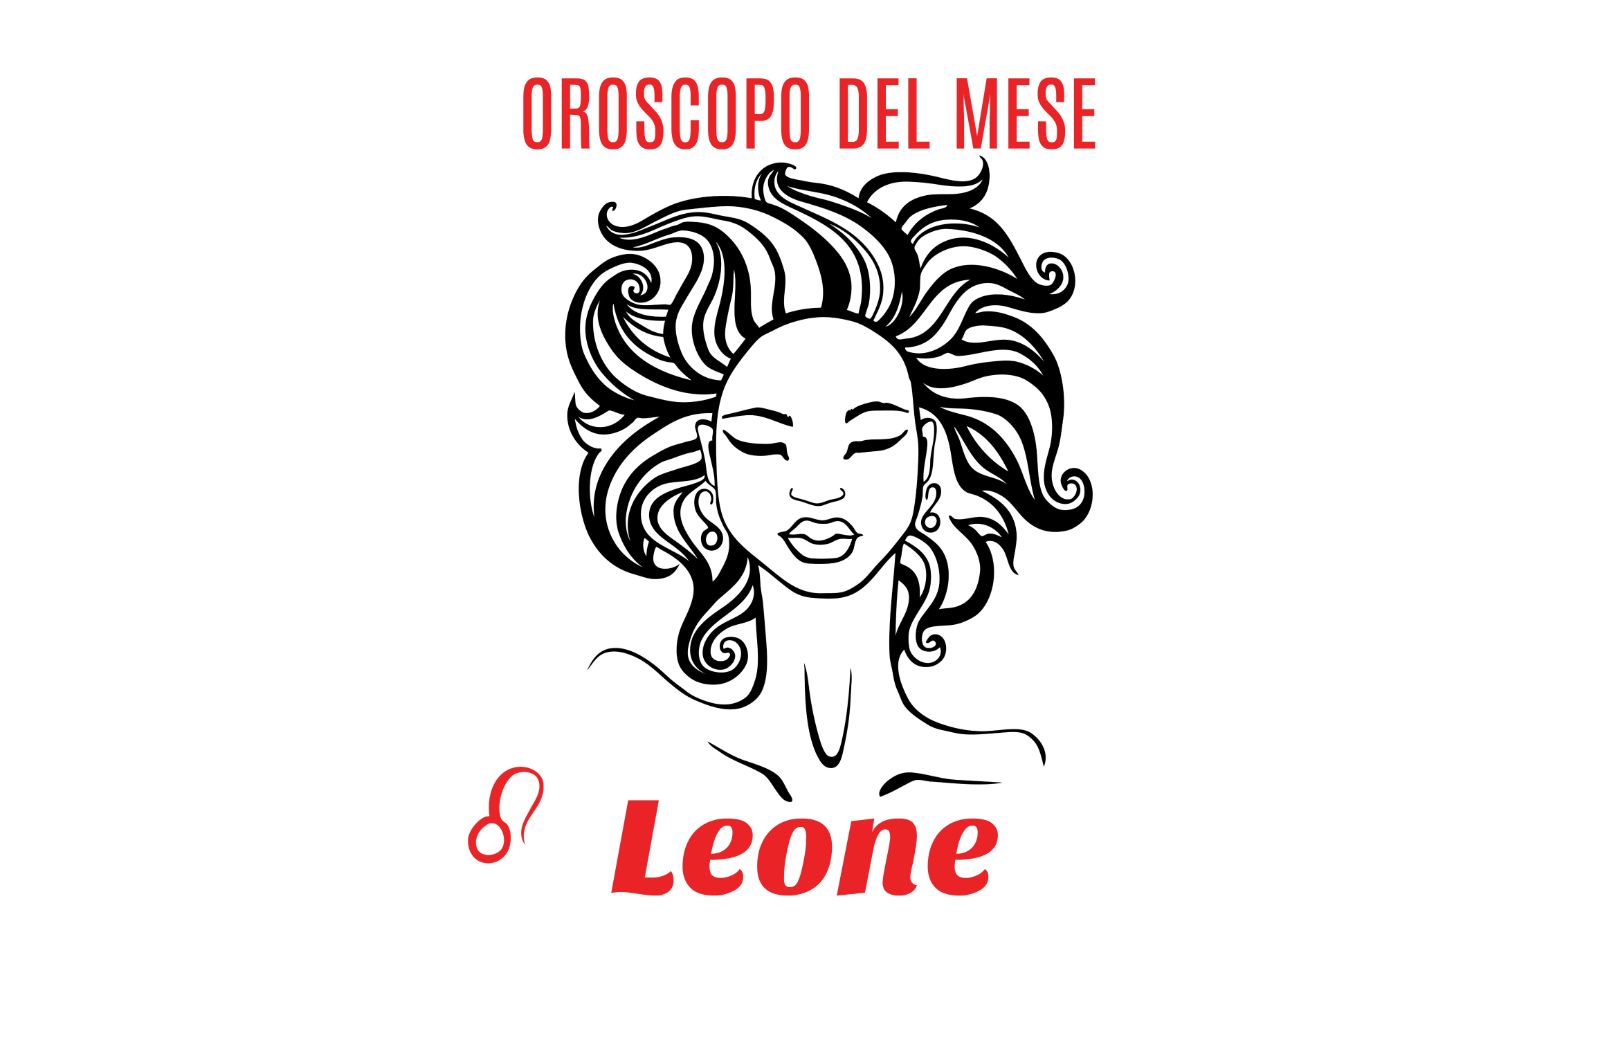 Oroscopo del mese: Leone - novembre 2020